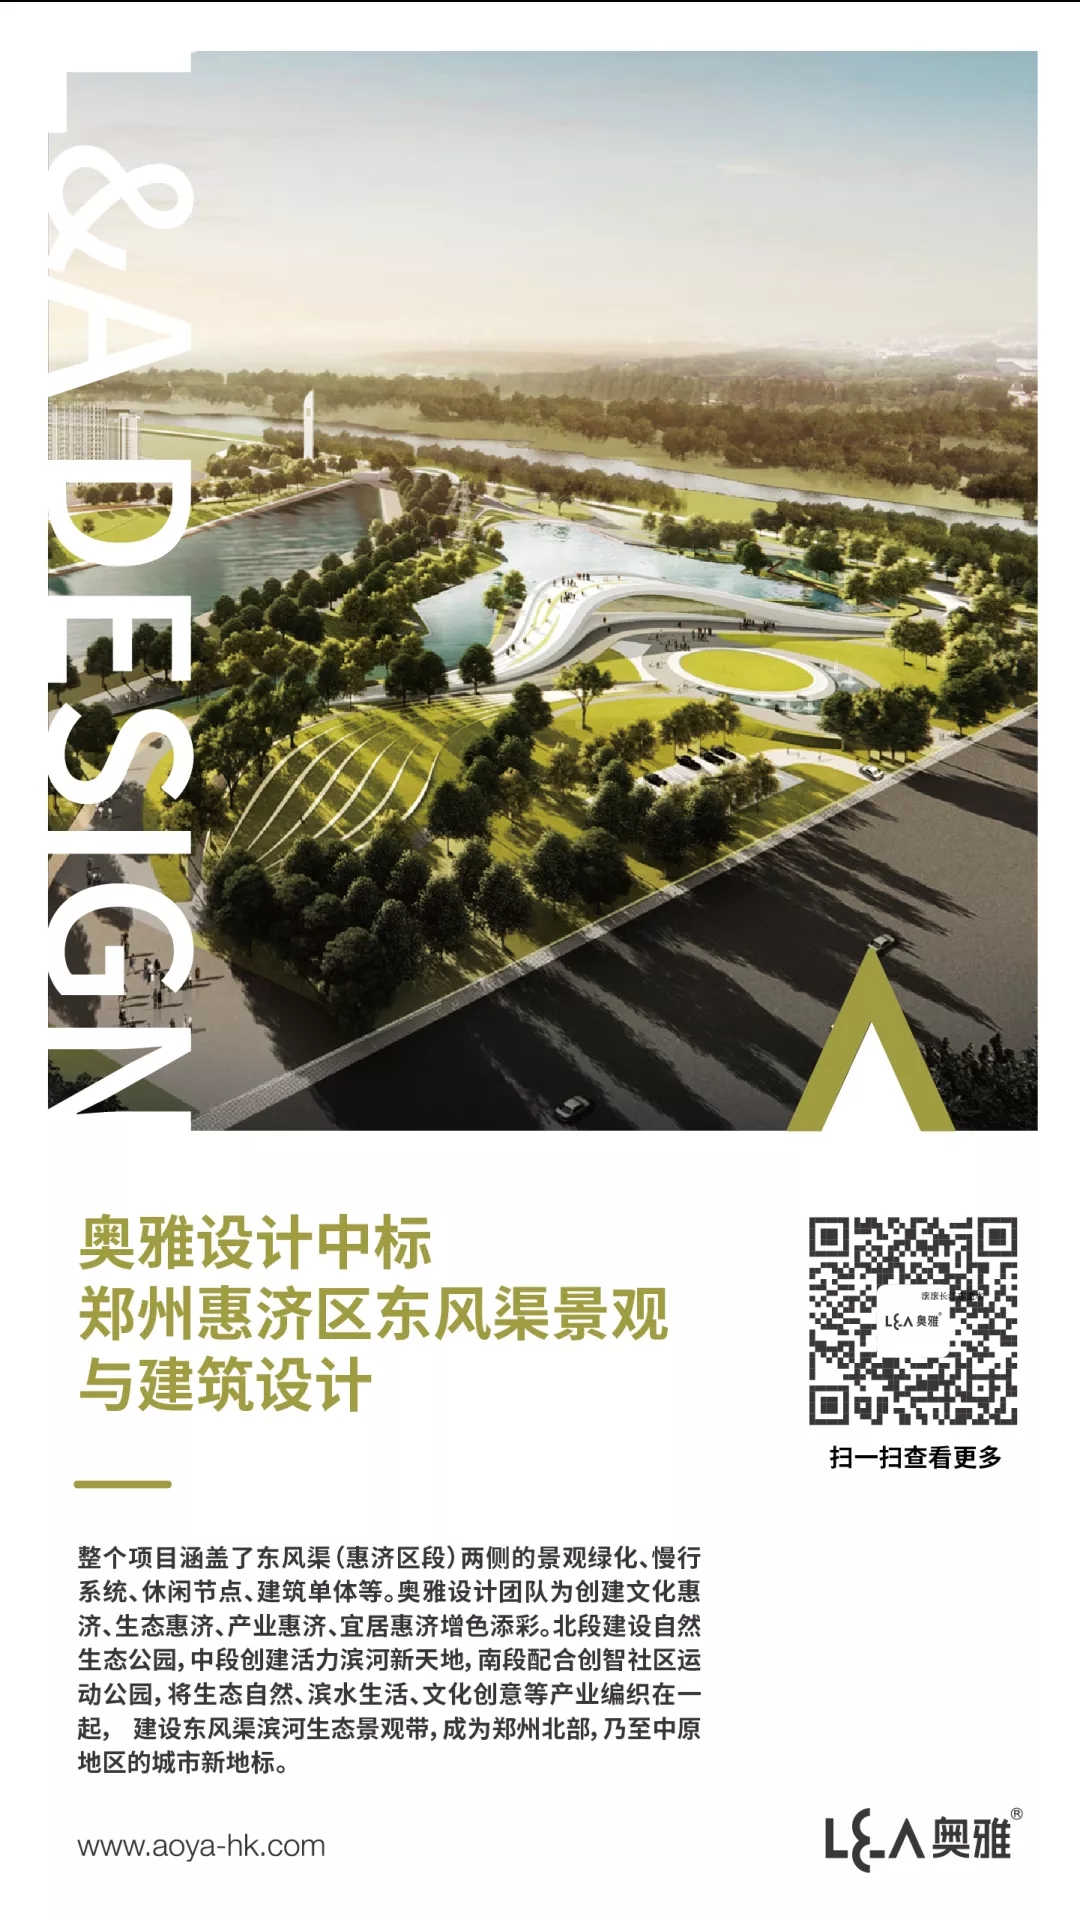 奥雅设计中标郑州惠济区东风渠项目景观与建筑设计